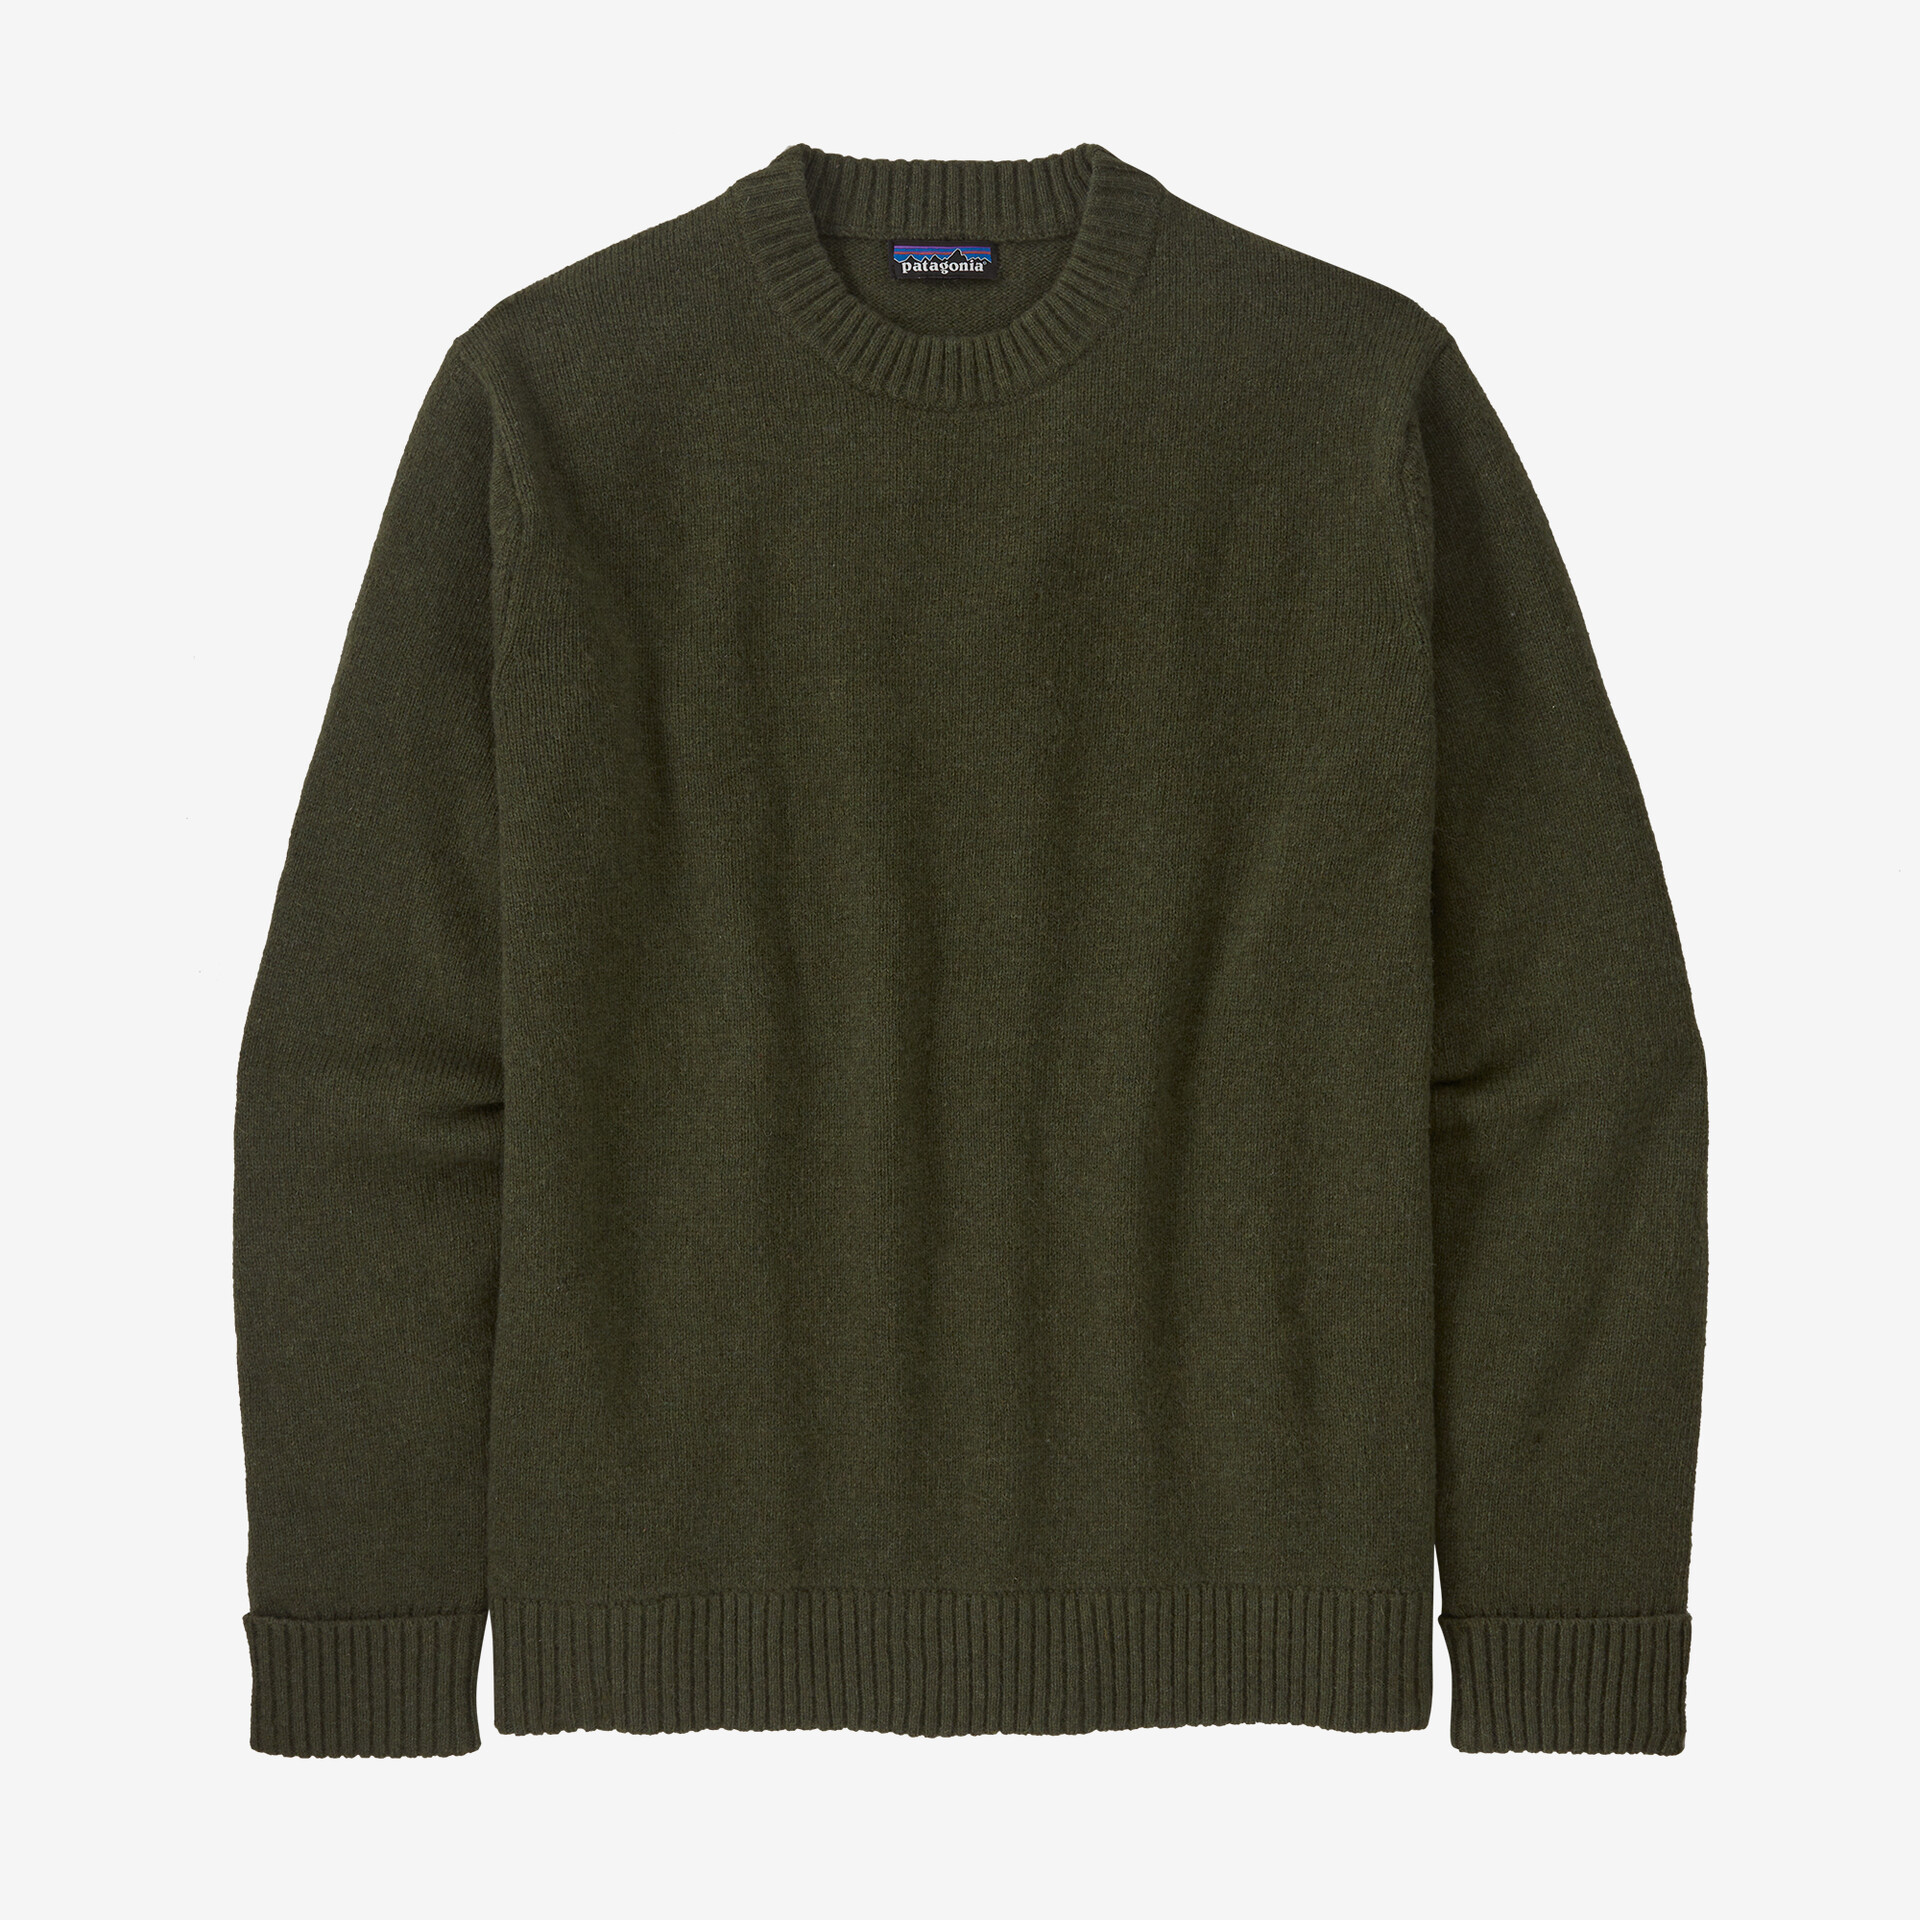 цена Мужской свитер из переработанной шерсти Patagonia, зеленый